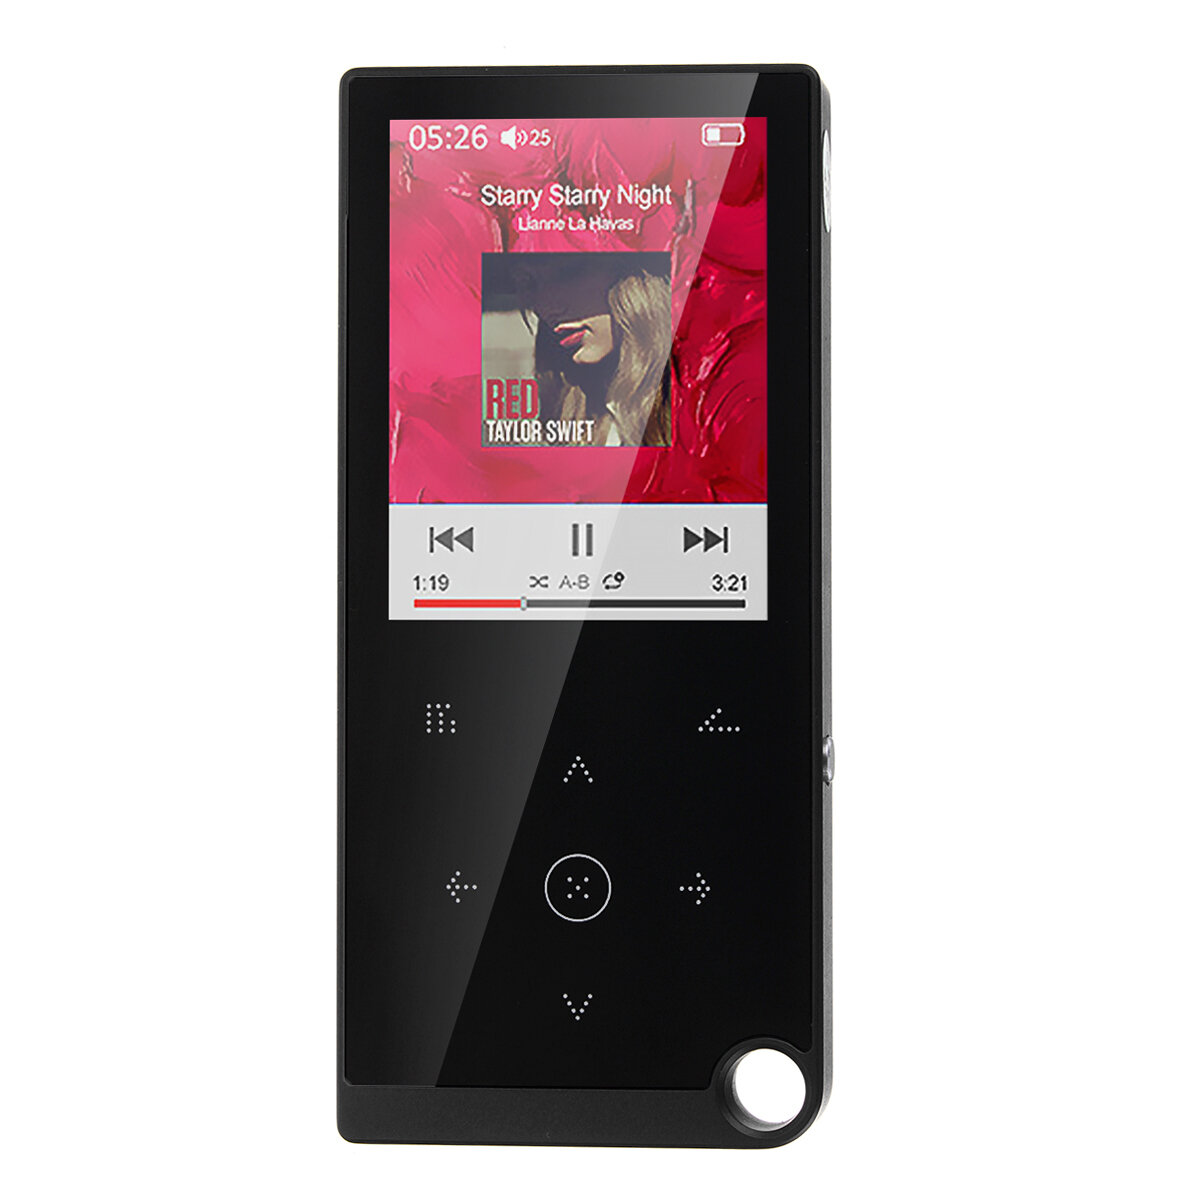 16GB 2.4 pulgadas bluetooth Reproductor de MP3 Altavoz incorporado Reproductor de música HD Grabación Ebook FM Radio